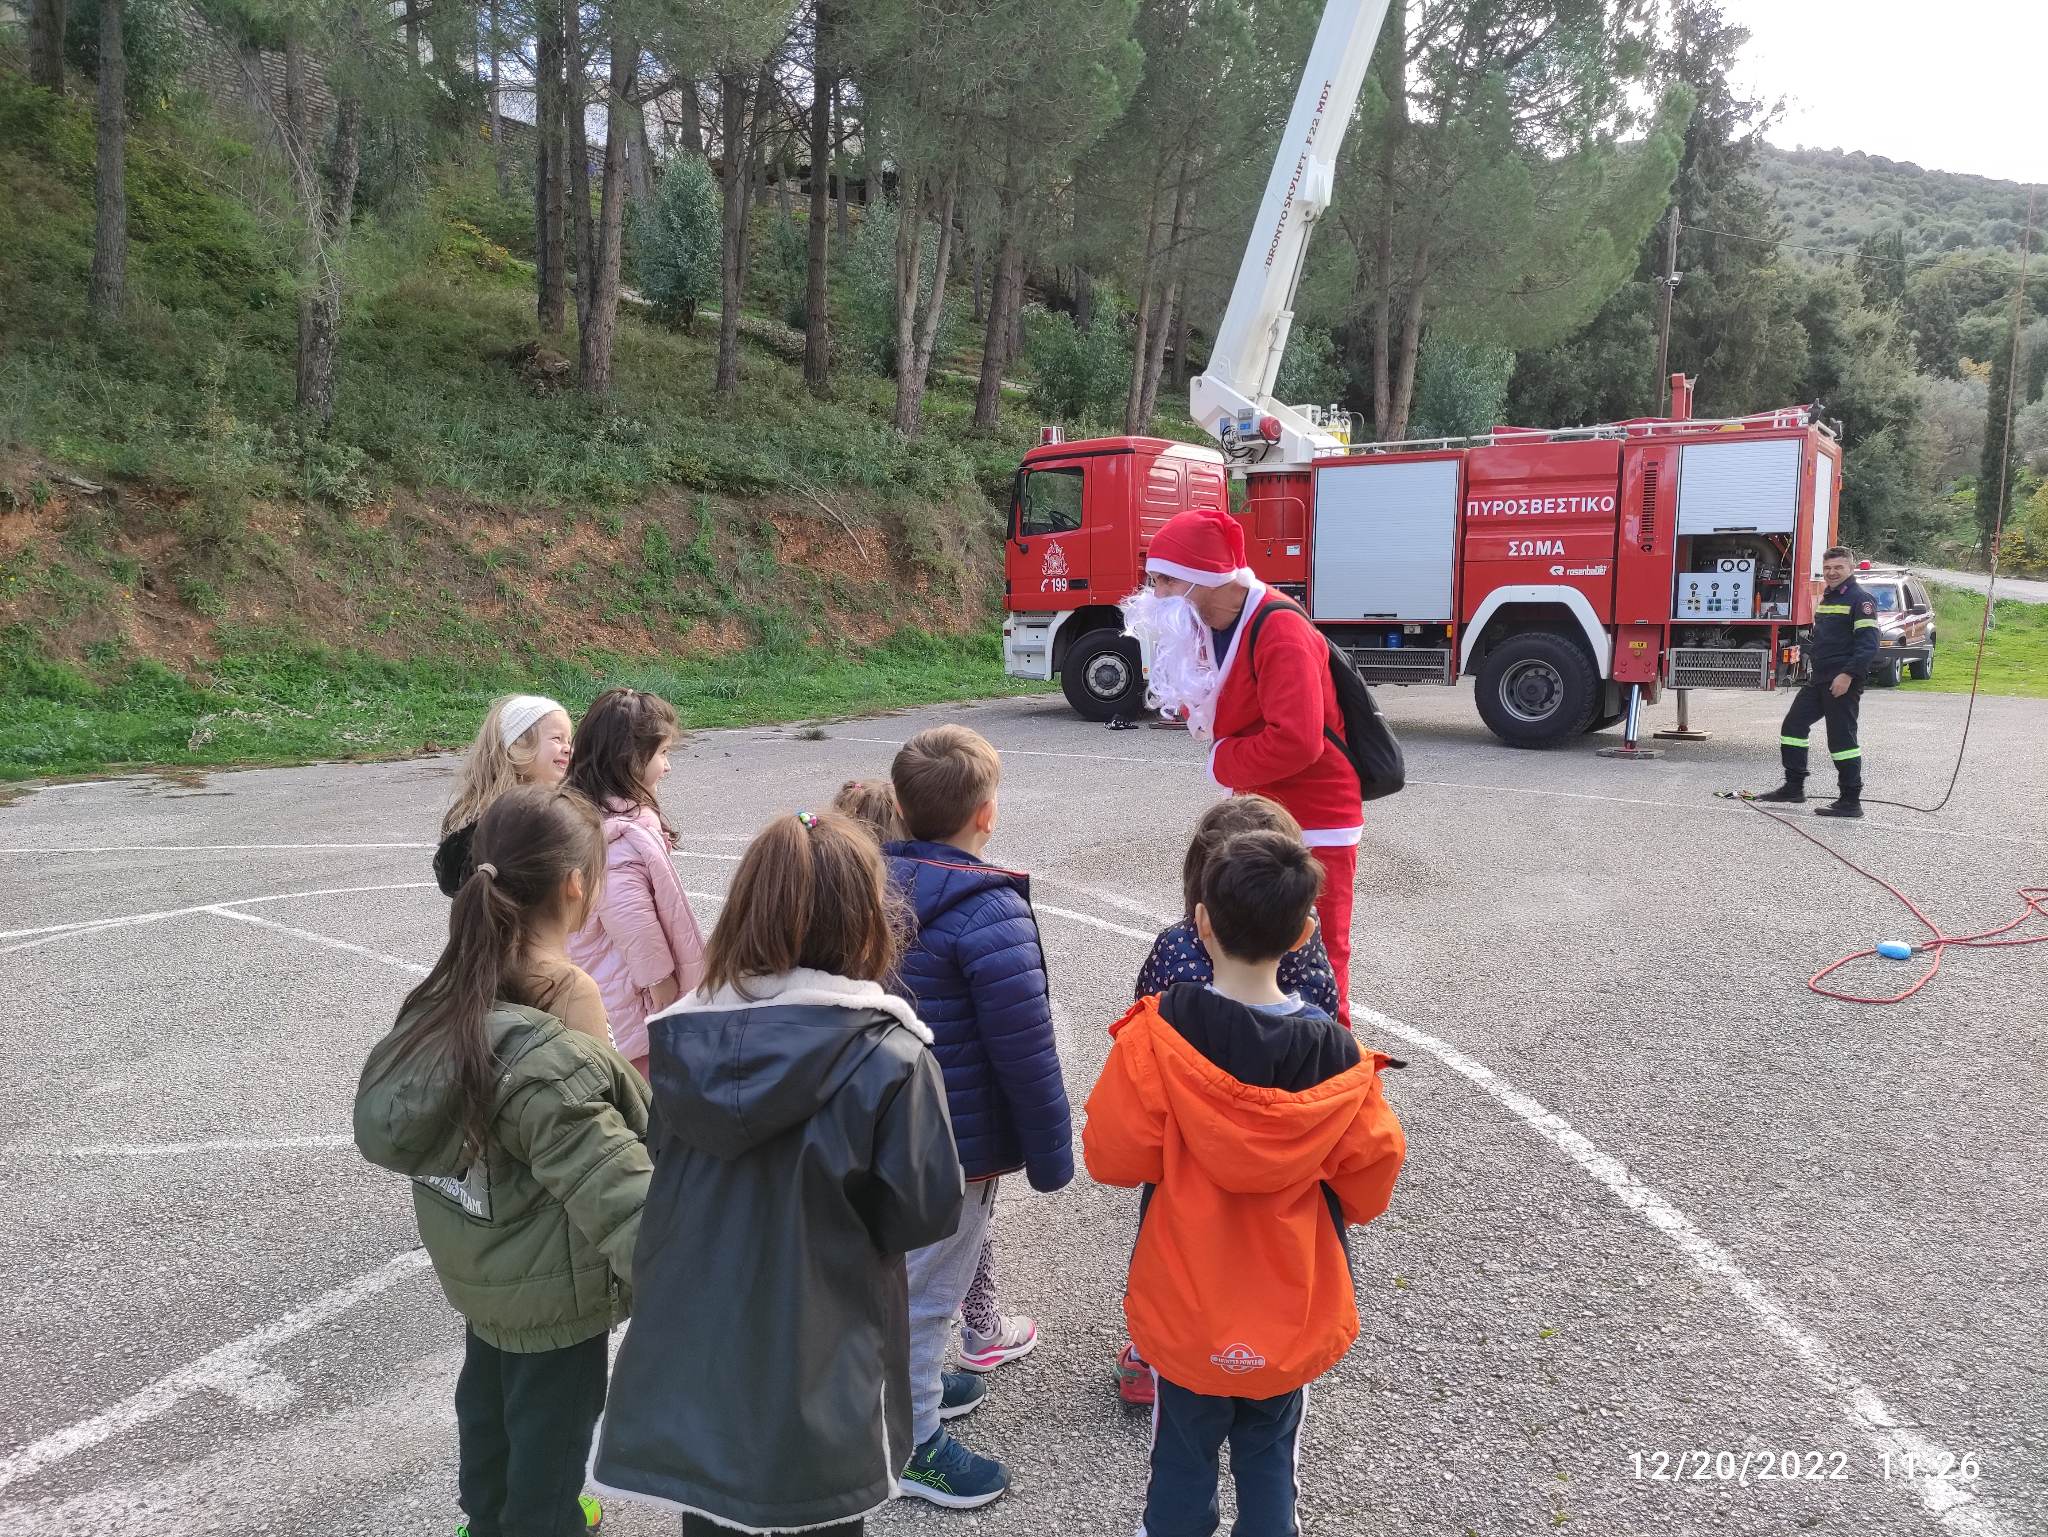 “Ουρανοκατέβατος” o Άγιος Βασίλης έφτασε στο νηπιαγωγείο Μαυρουδίου στην Ηγουμενίτσα (photos- video)